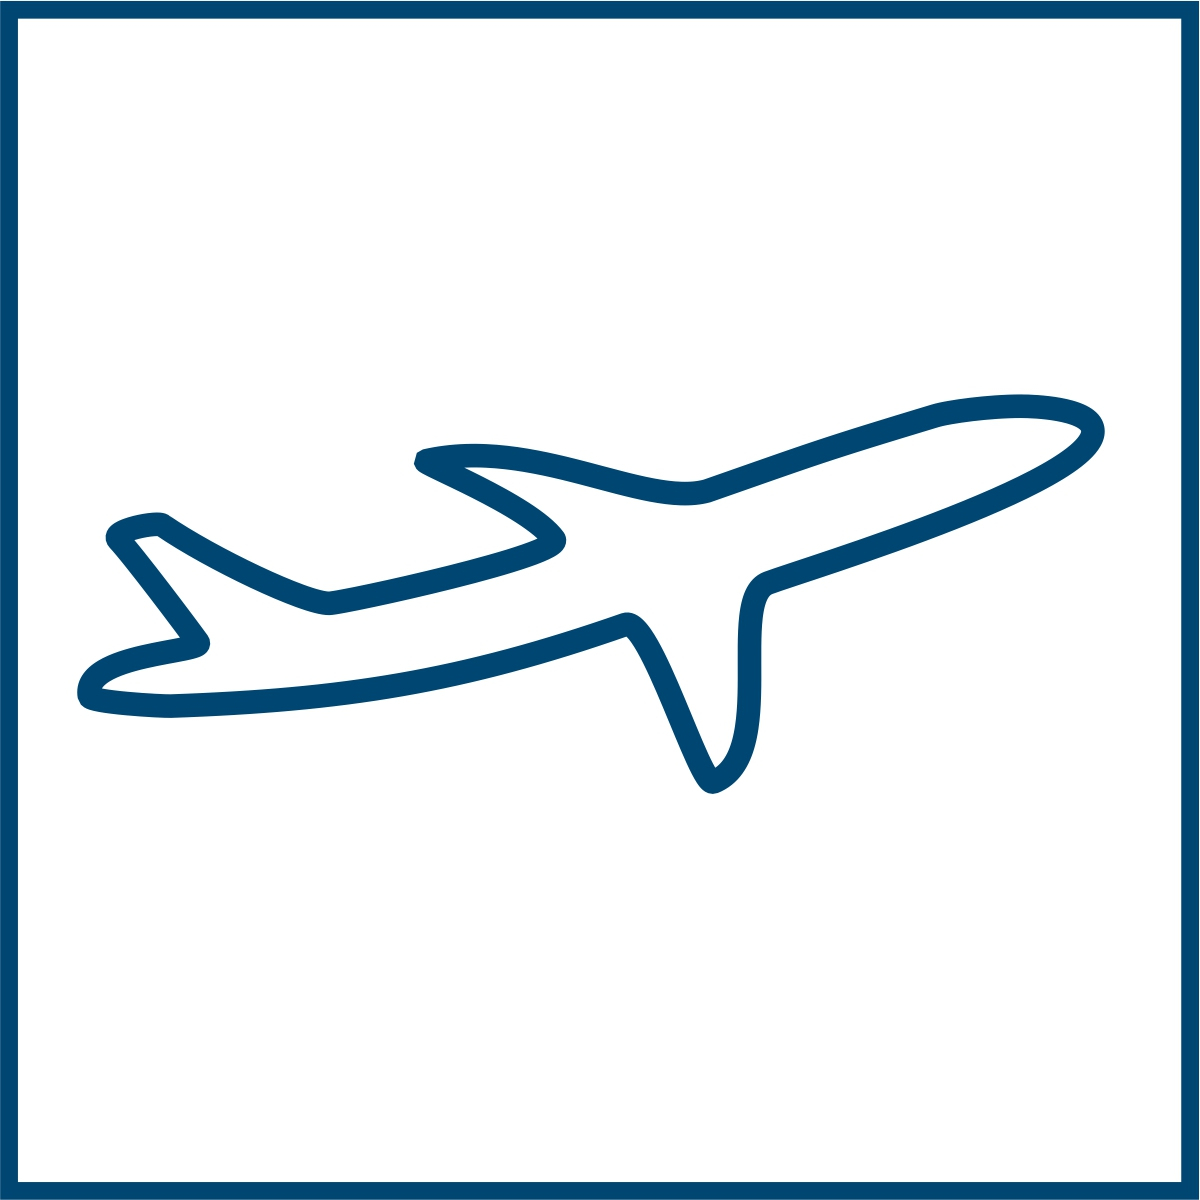 Piktogramm eines Flugzeugs